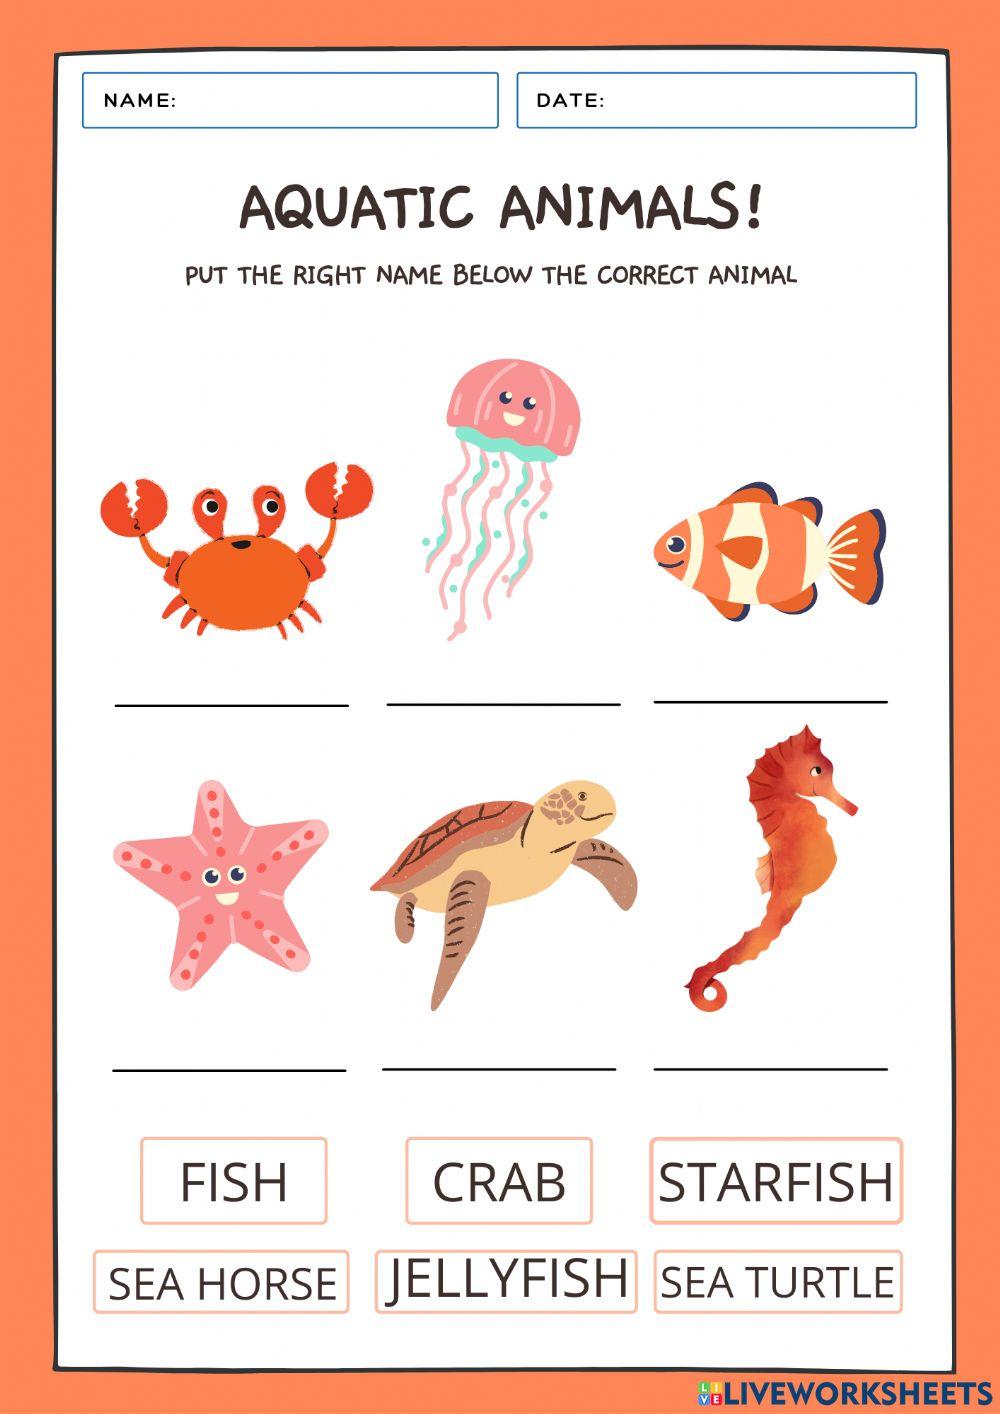 Aquatic Animals online activity | Live Worksheets